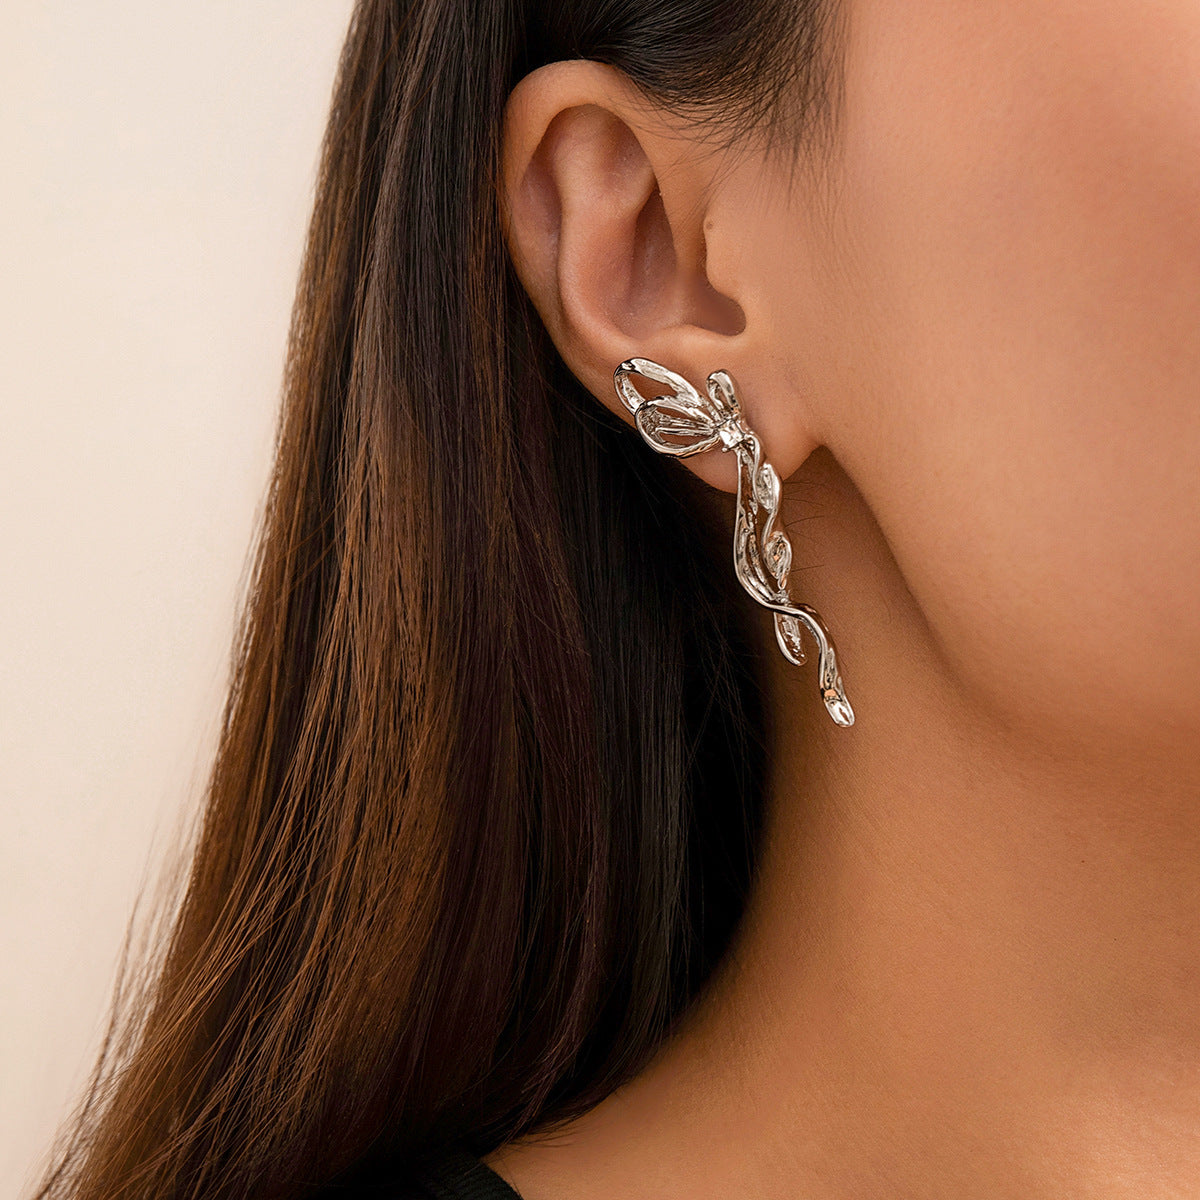 Bowknot Earrings For Women